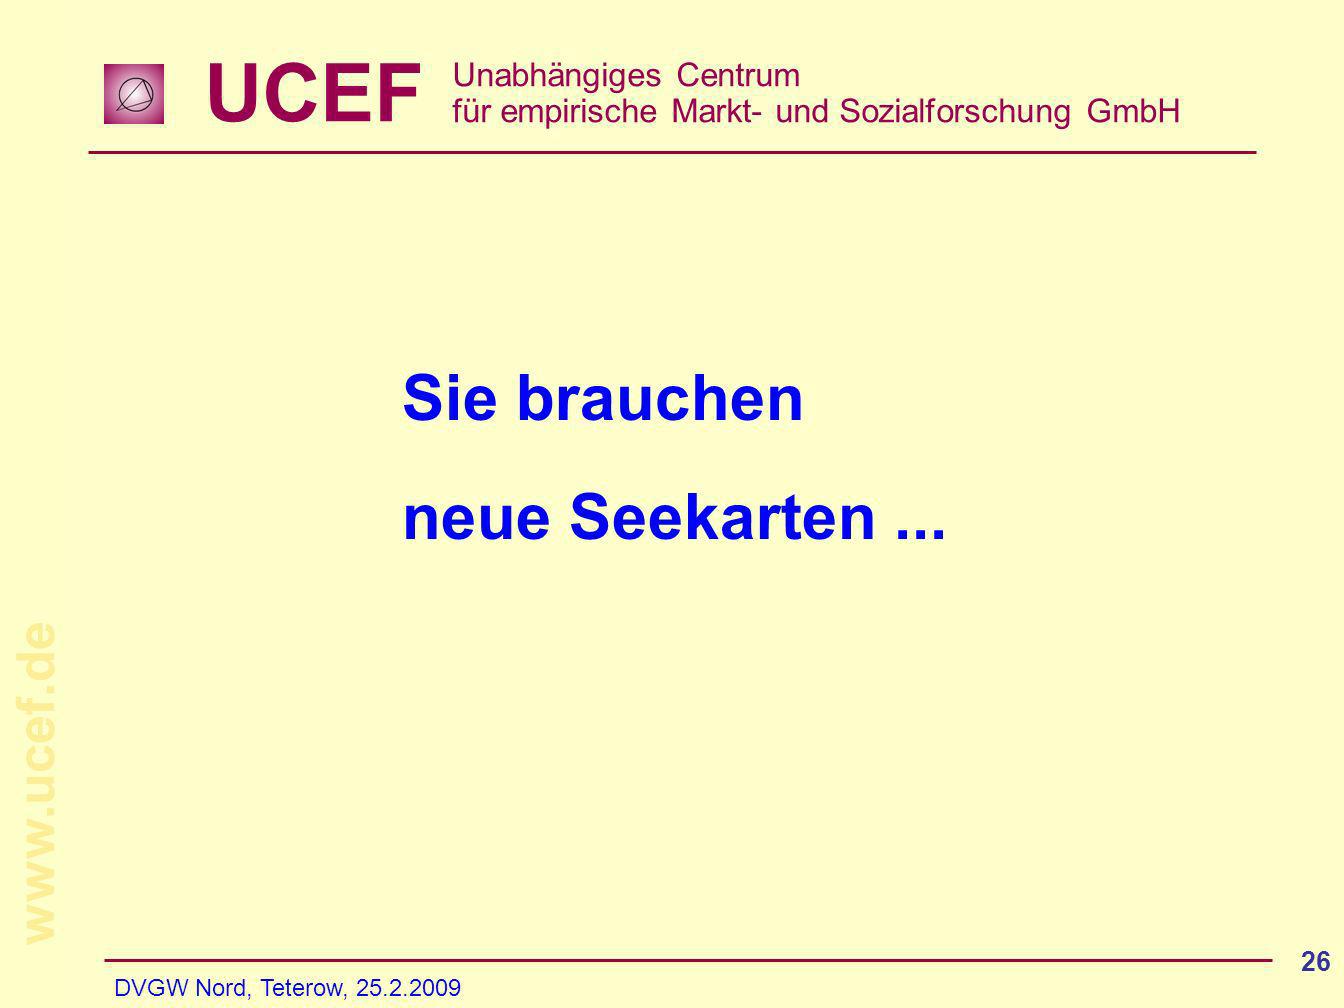 UCEF Unabhängiges Centrum für empirische Markt- und Sozialforschung GmbH   DVGW Nord, Teterow, Sie brauchen neue Seekarten...